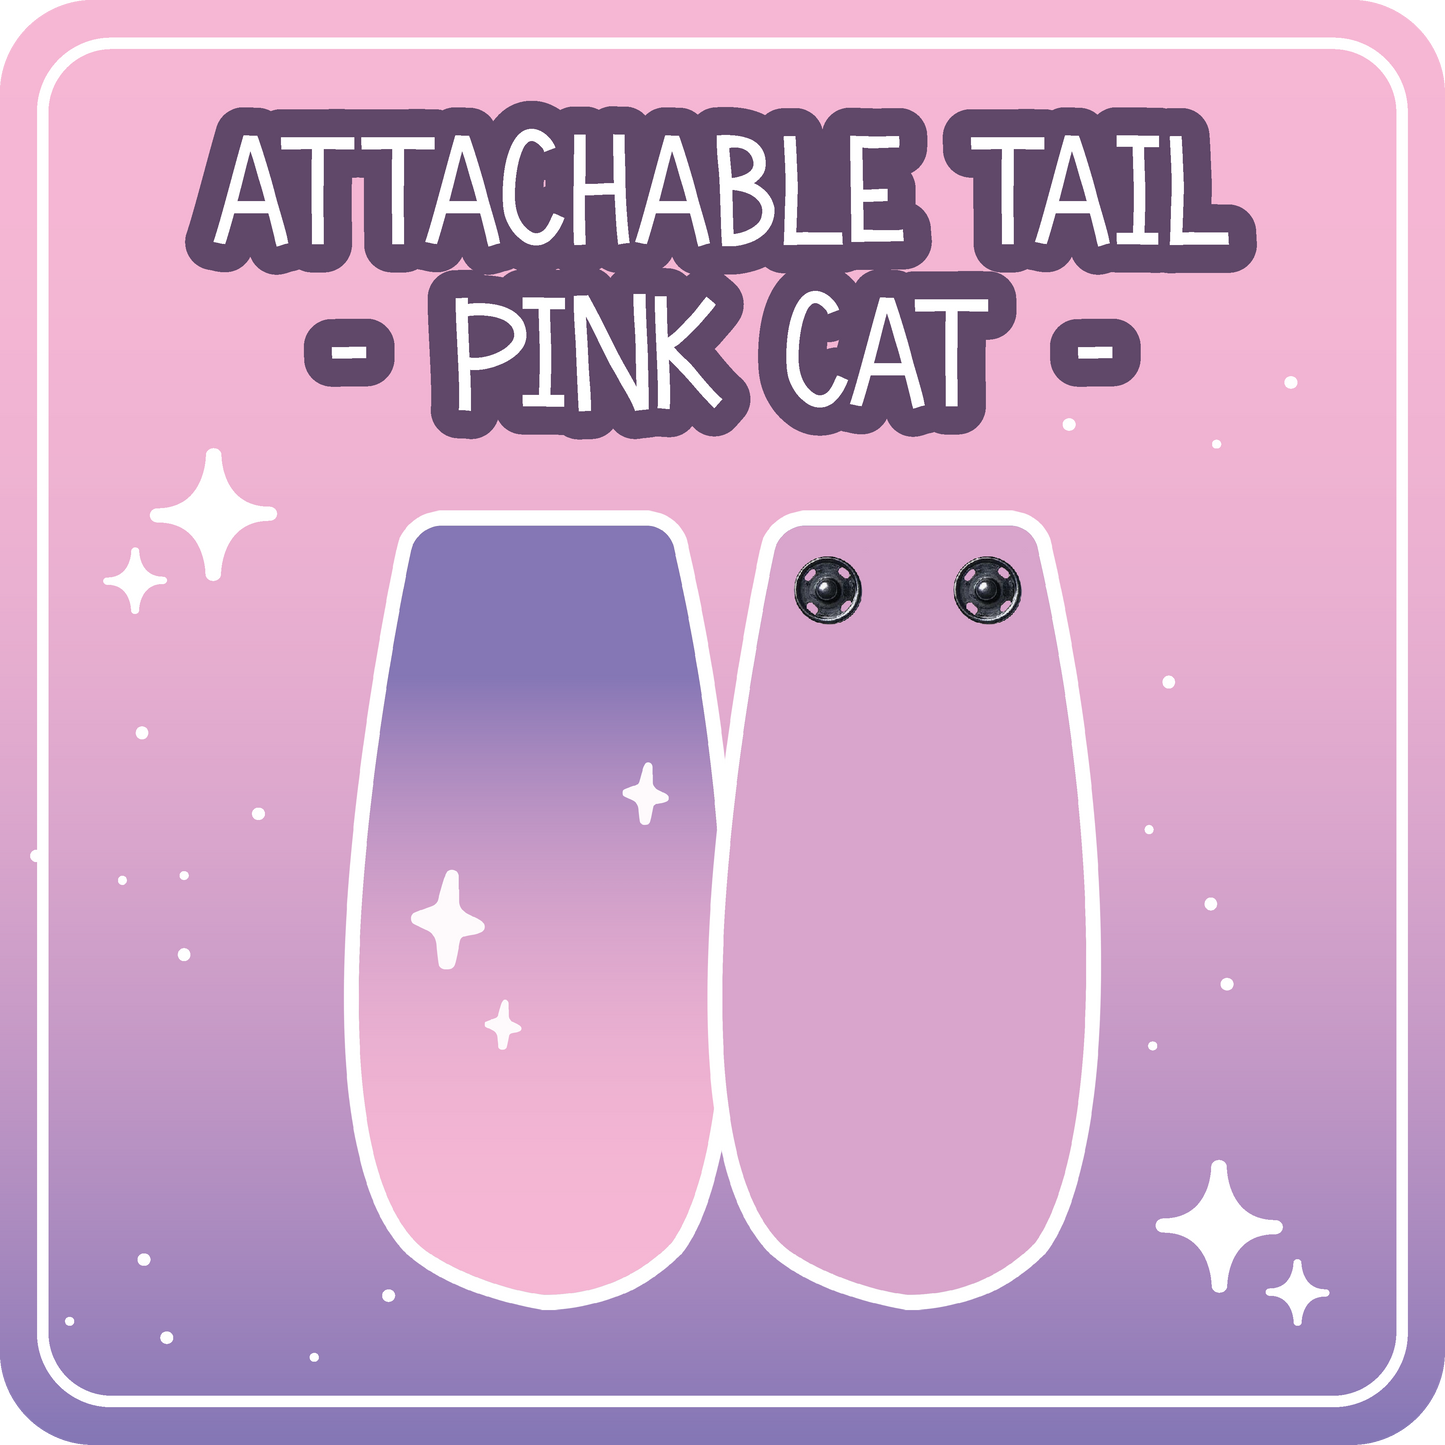 Kawaii Kompanions Ita Bag Bundle Pink Cat